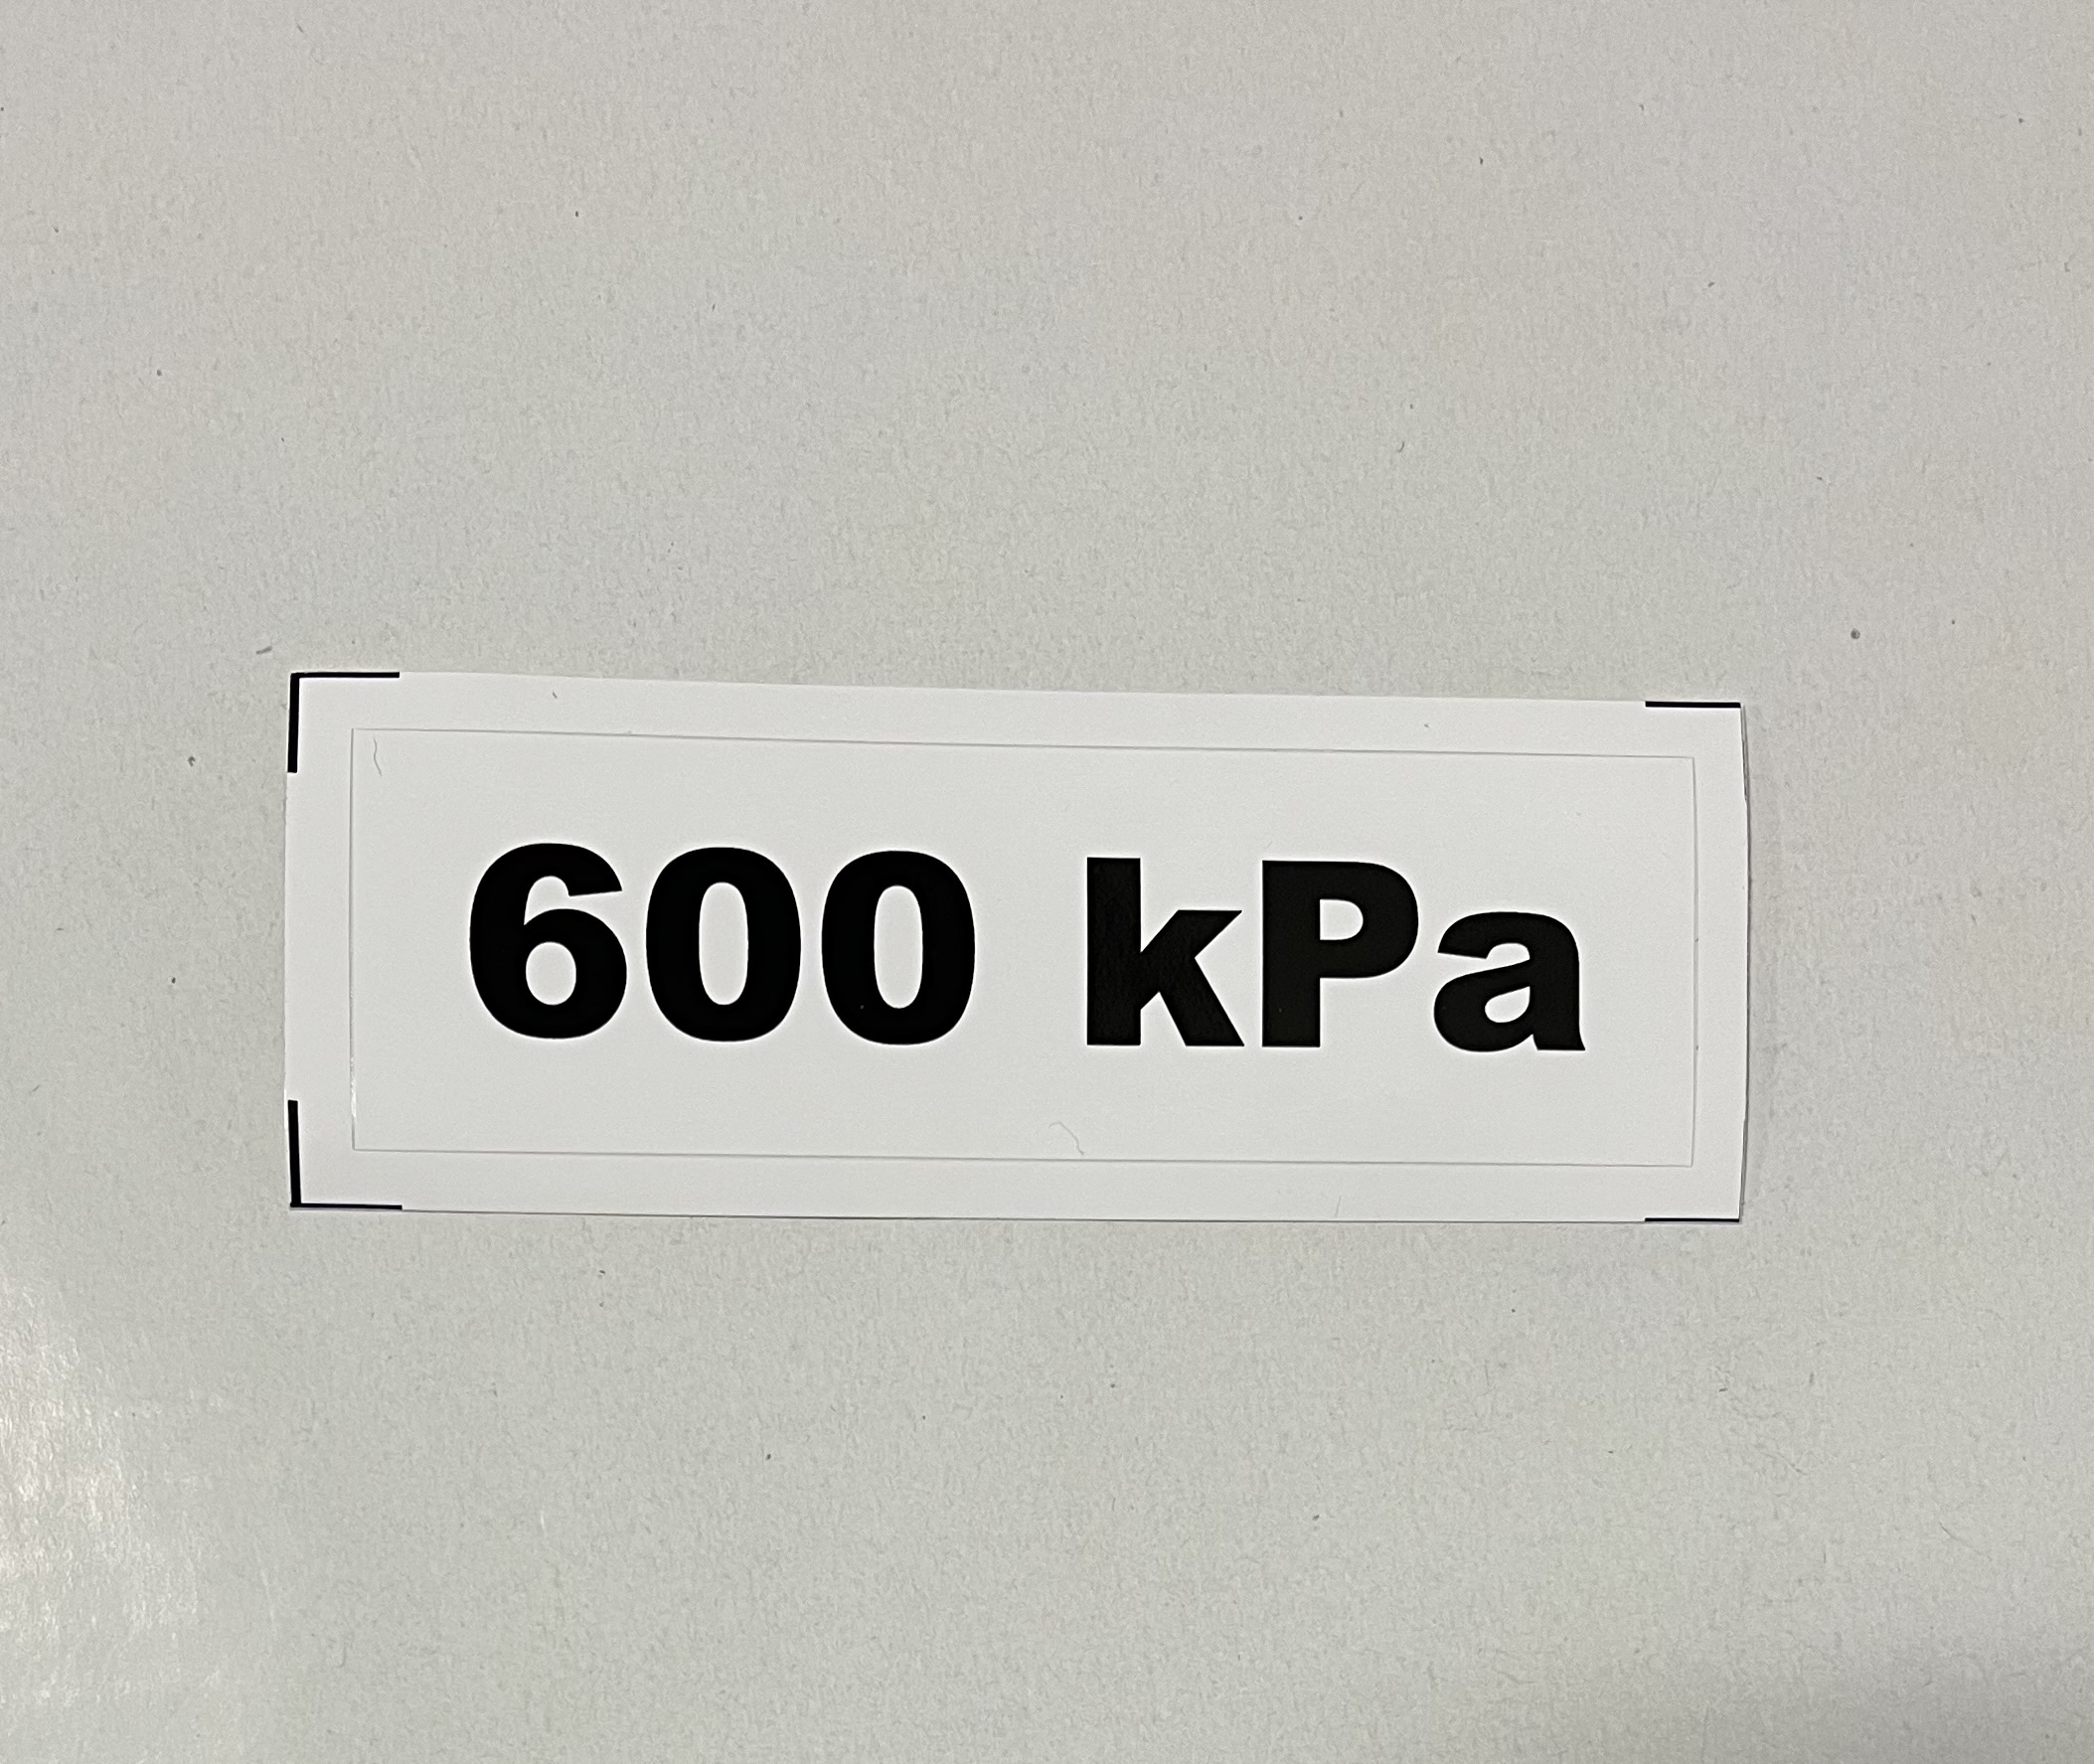 Označenie kPa 600